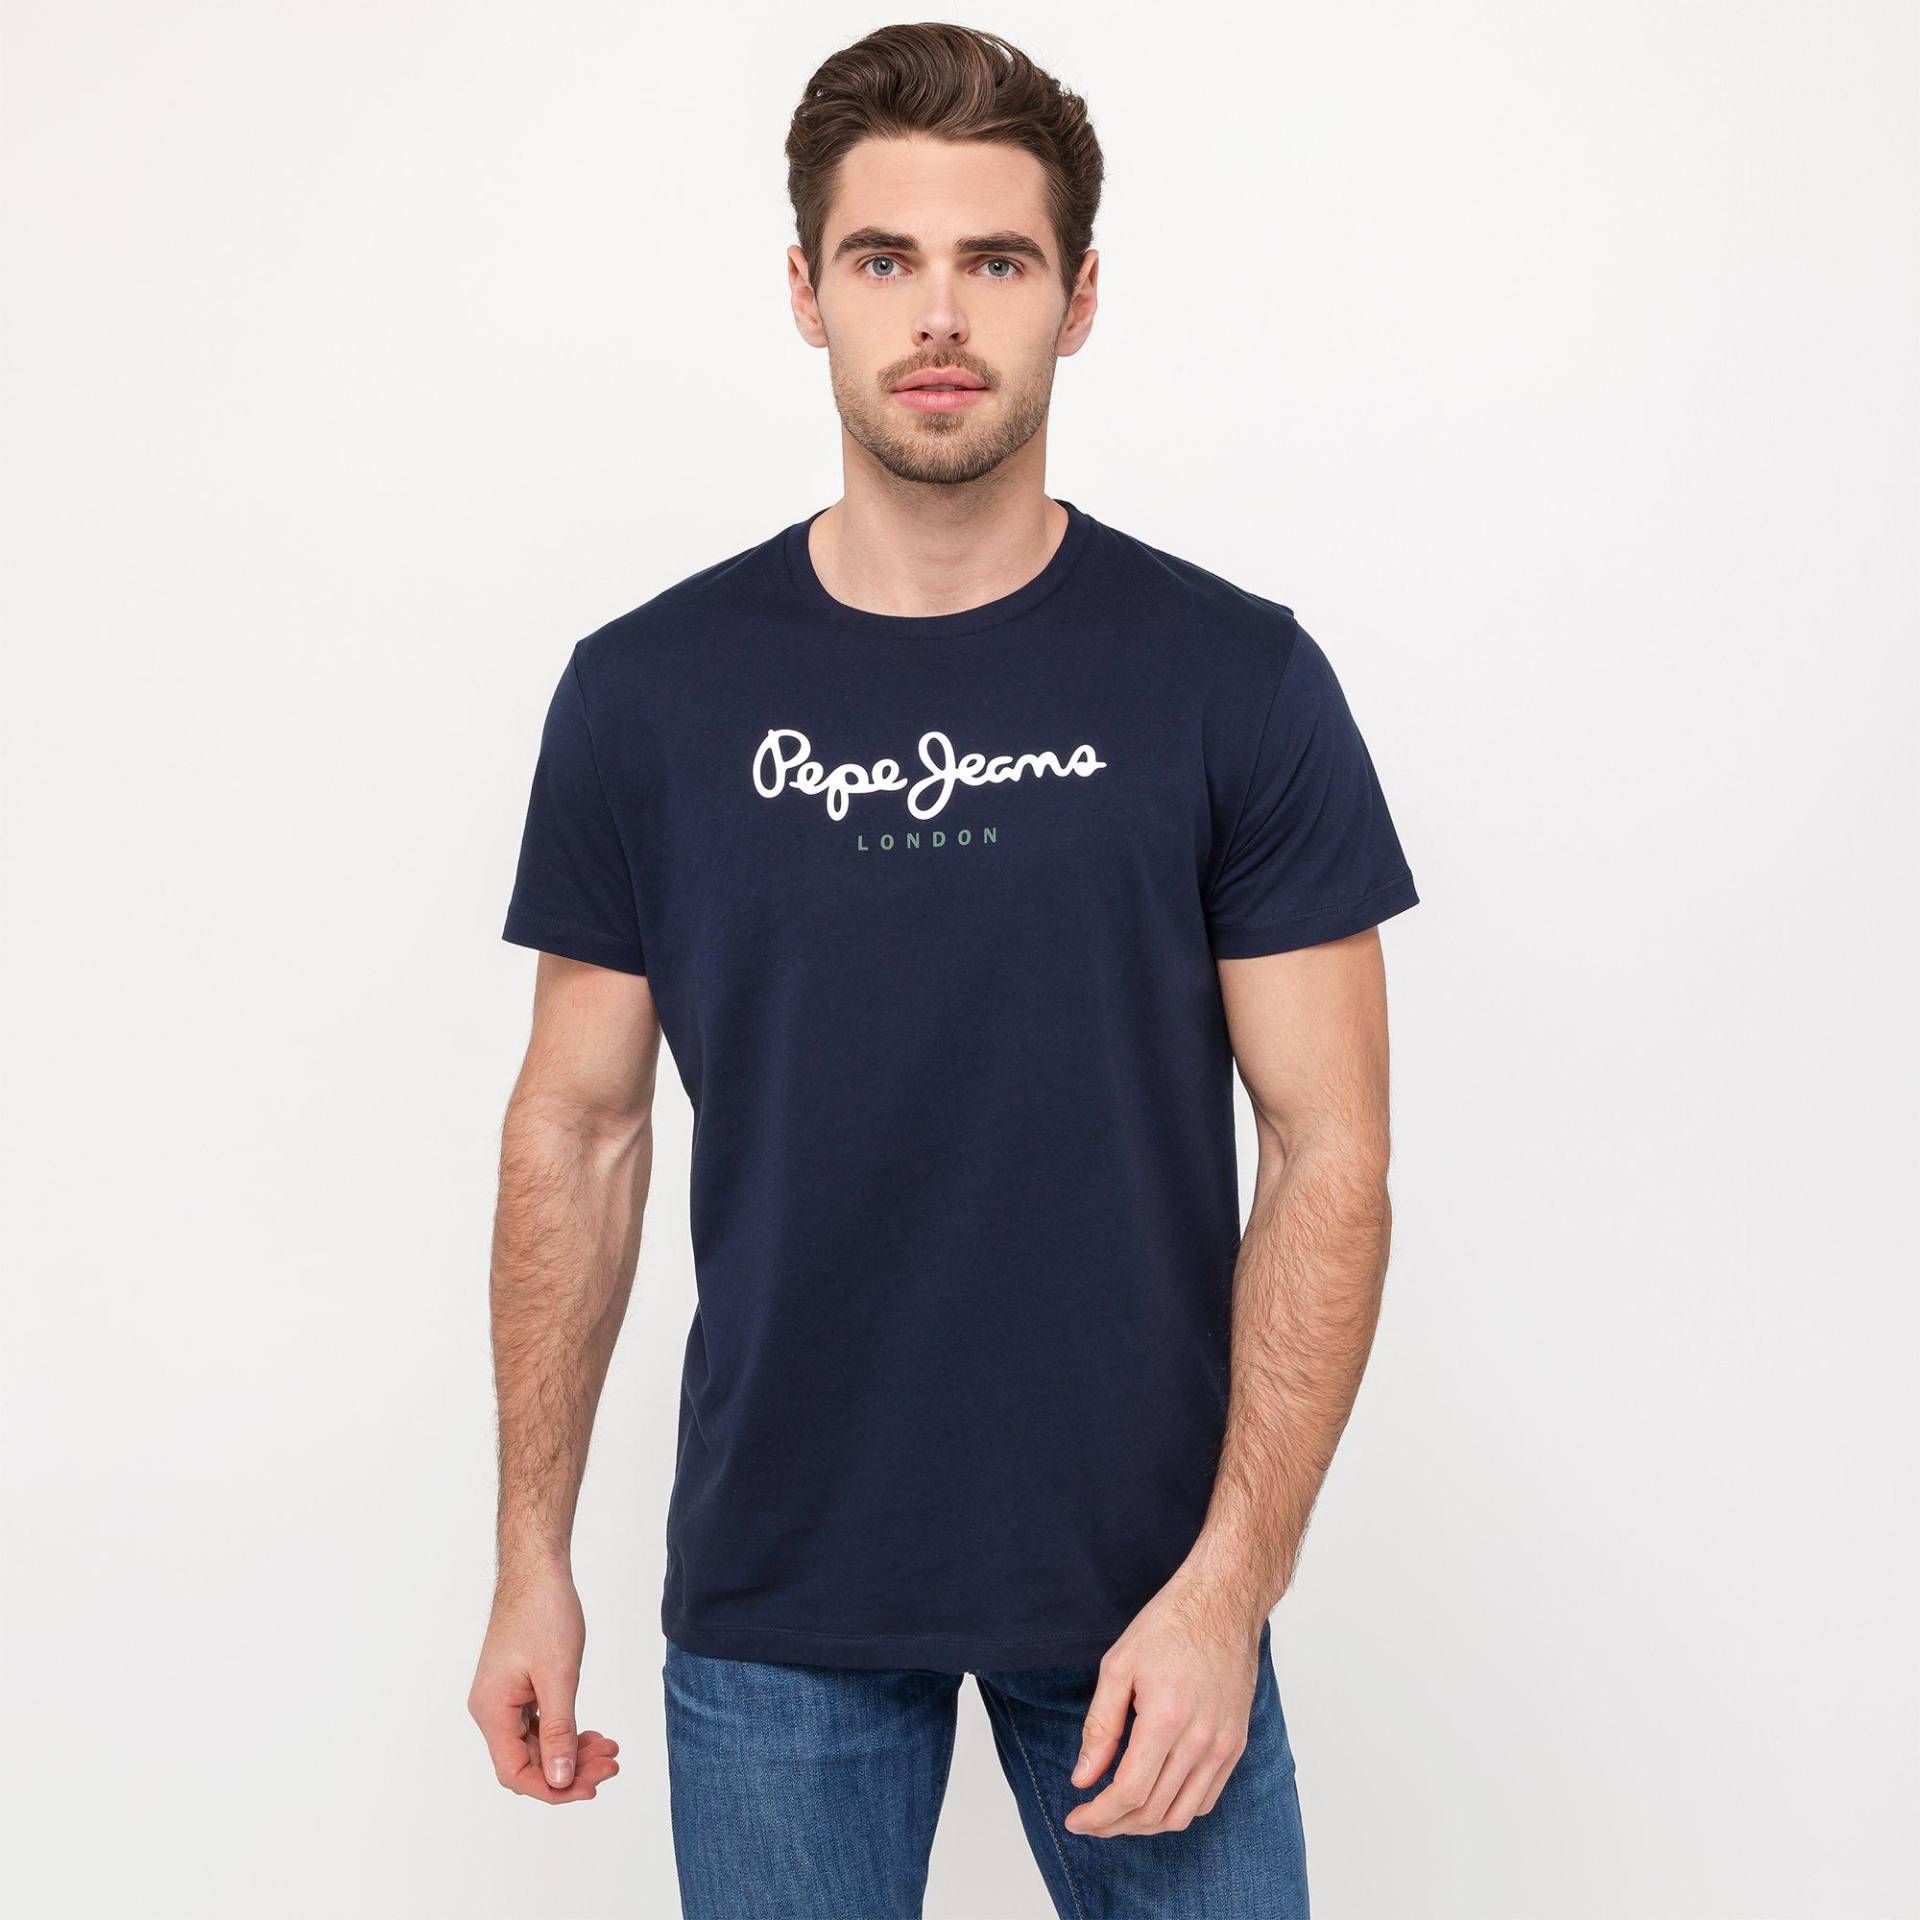 T-shirt Herren Marine M von Pepe Jeans